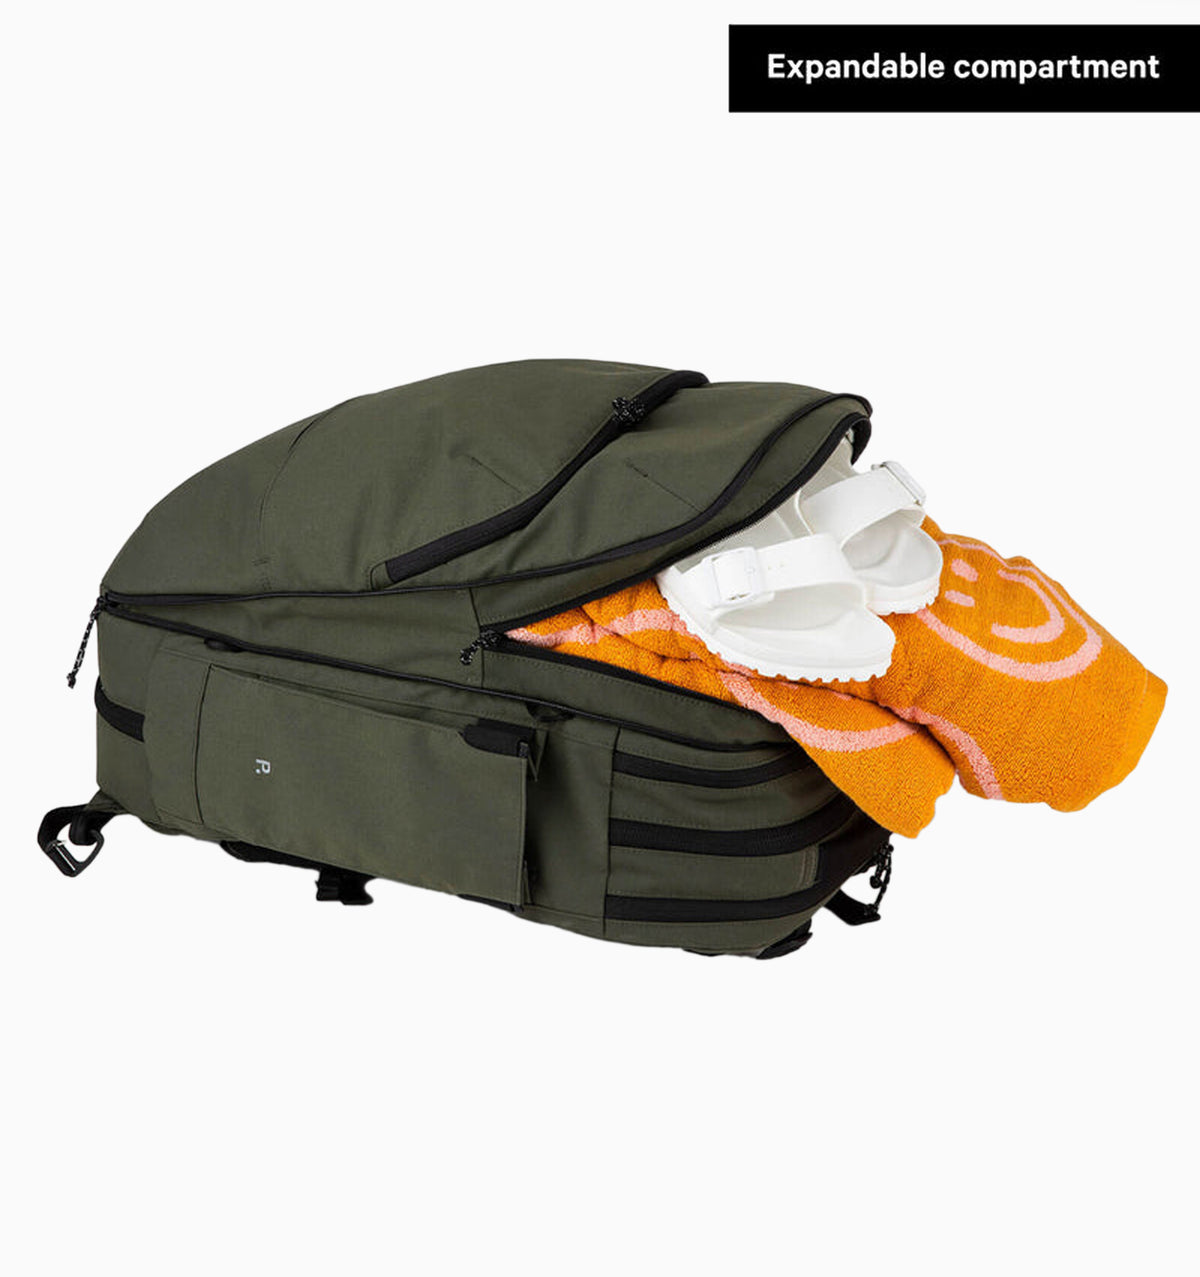 Pakt 16" Travel Backpack 35L - Forest